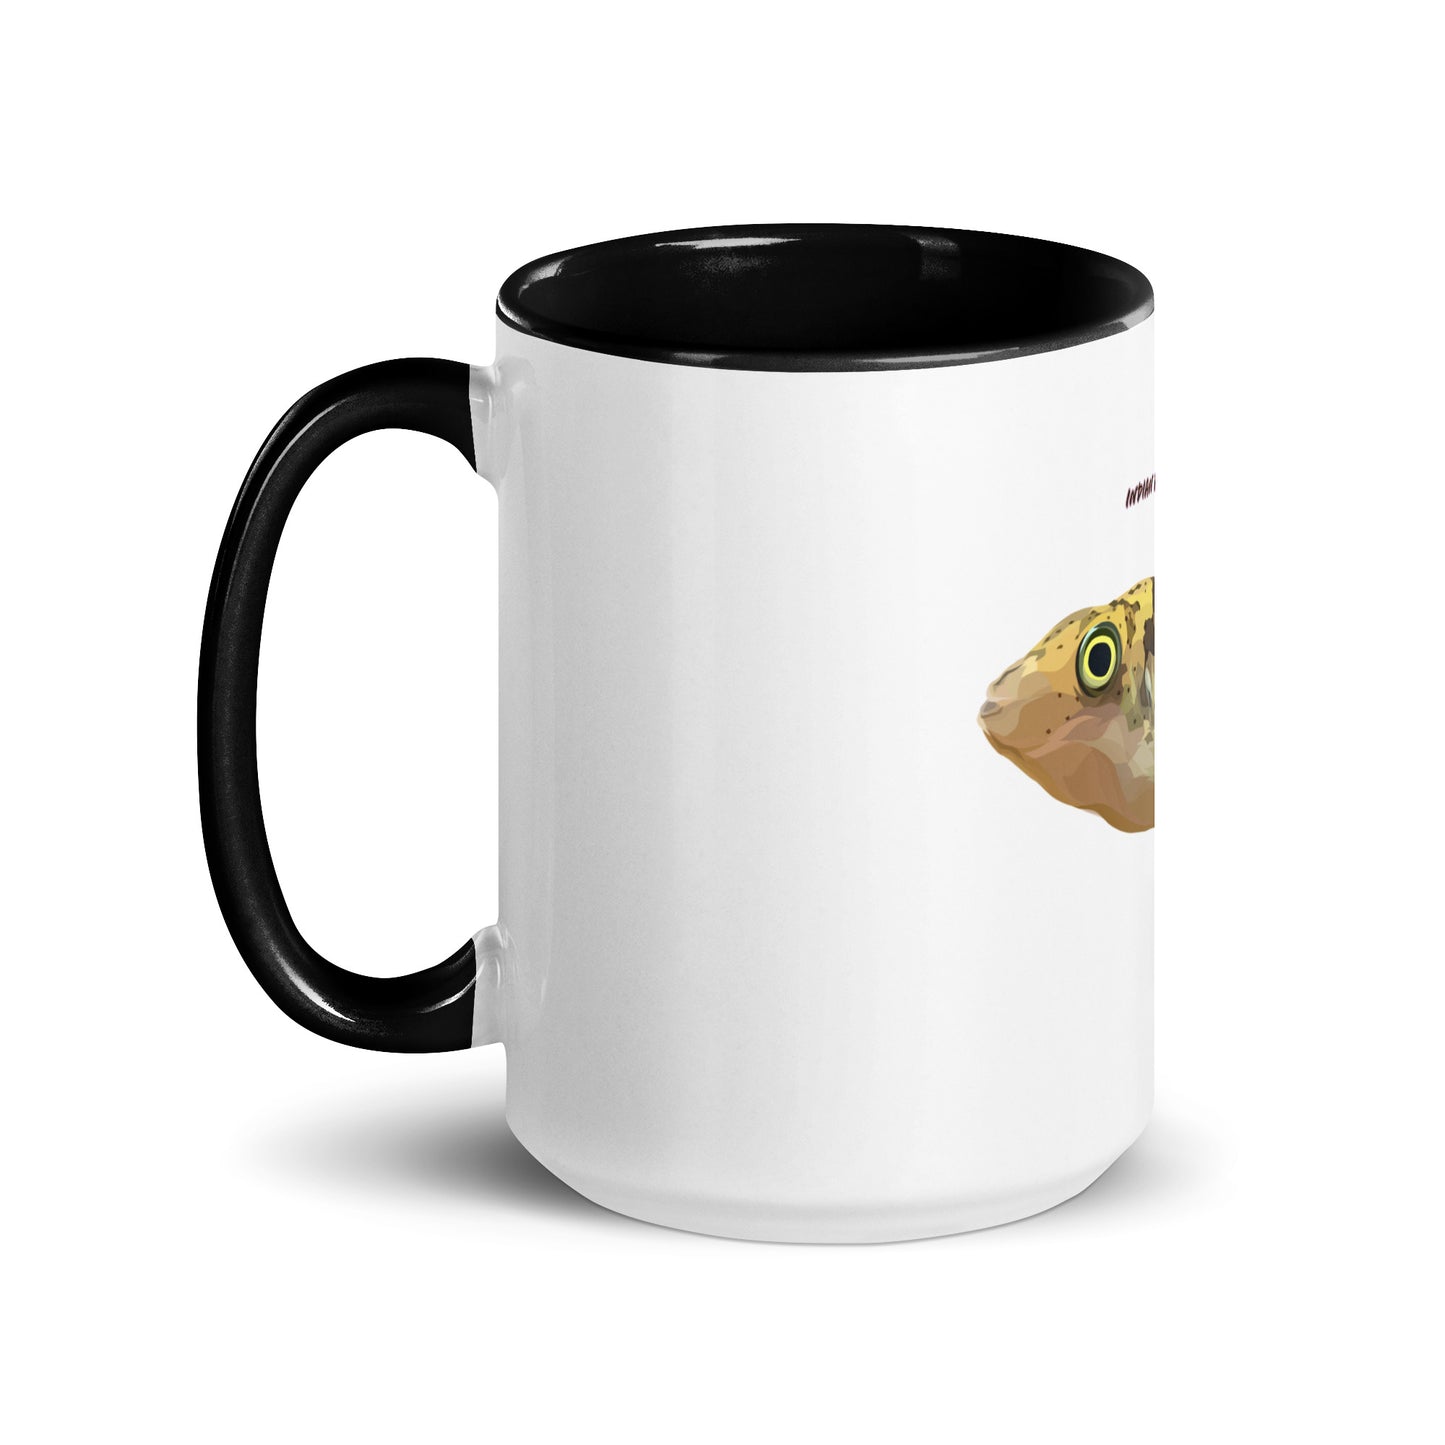 Pea Puffer | Ceramic Mug